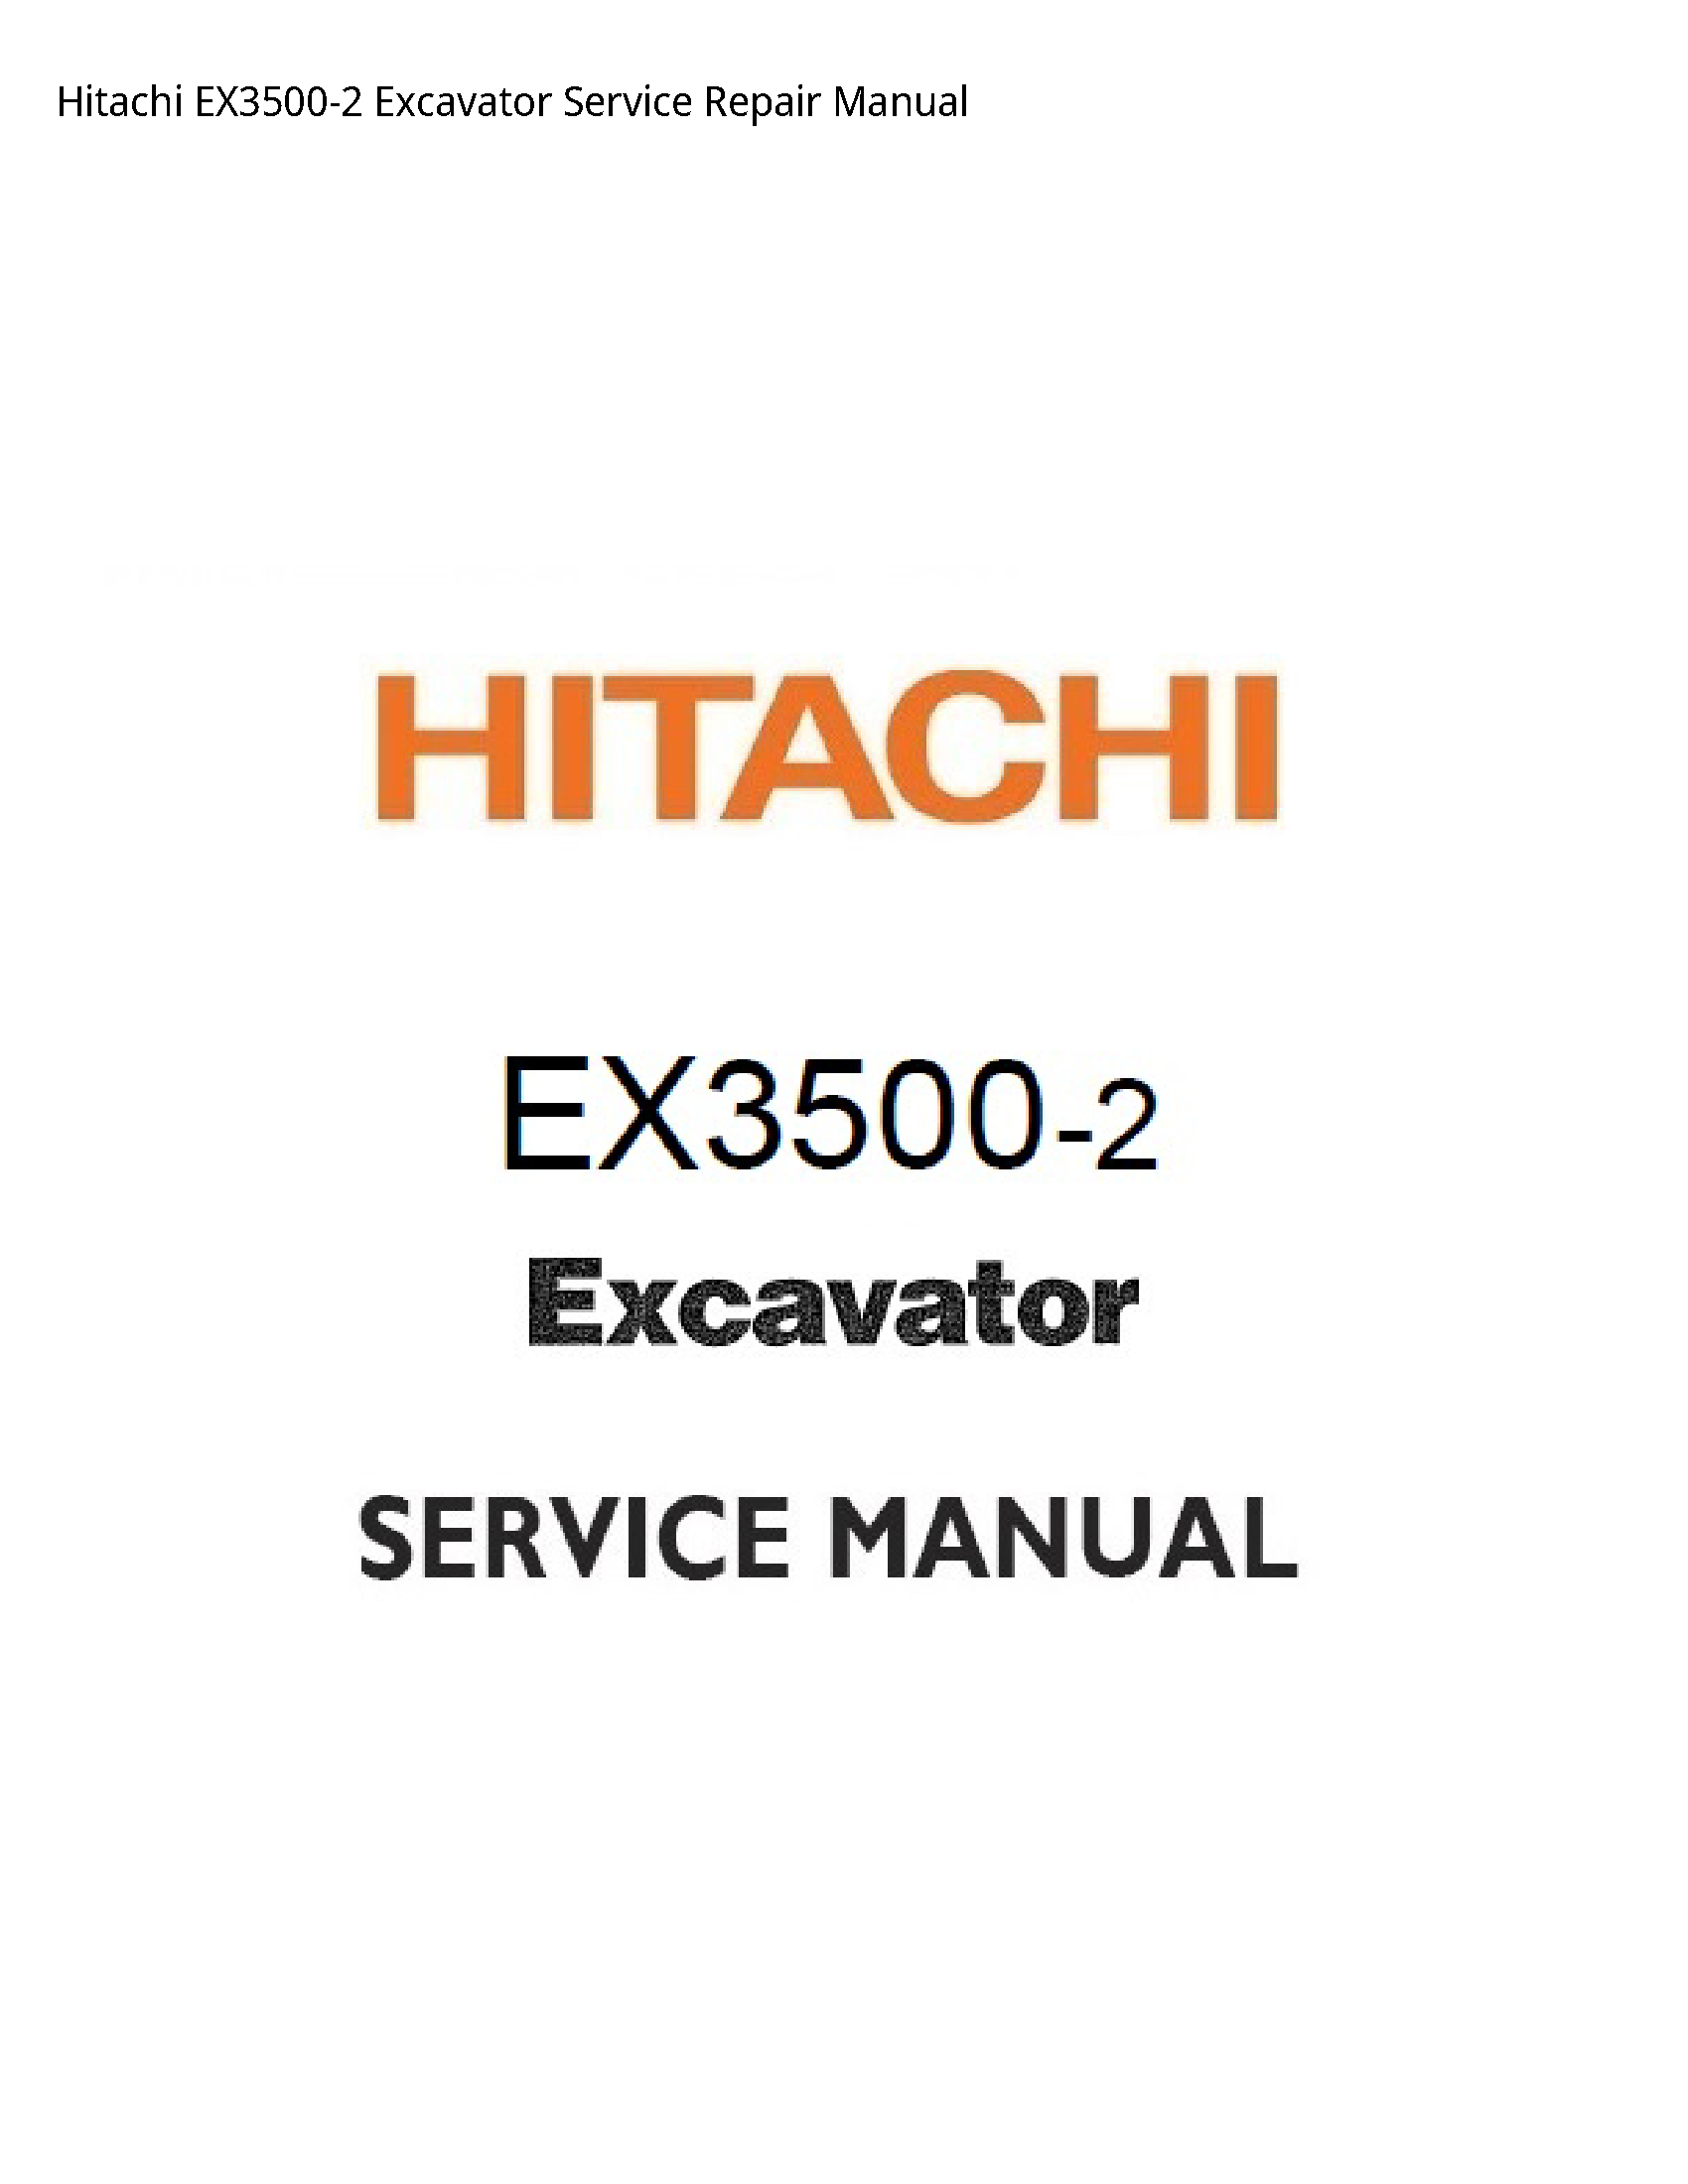 Hitachi EX3500-2 Excavator manual